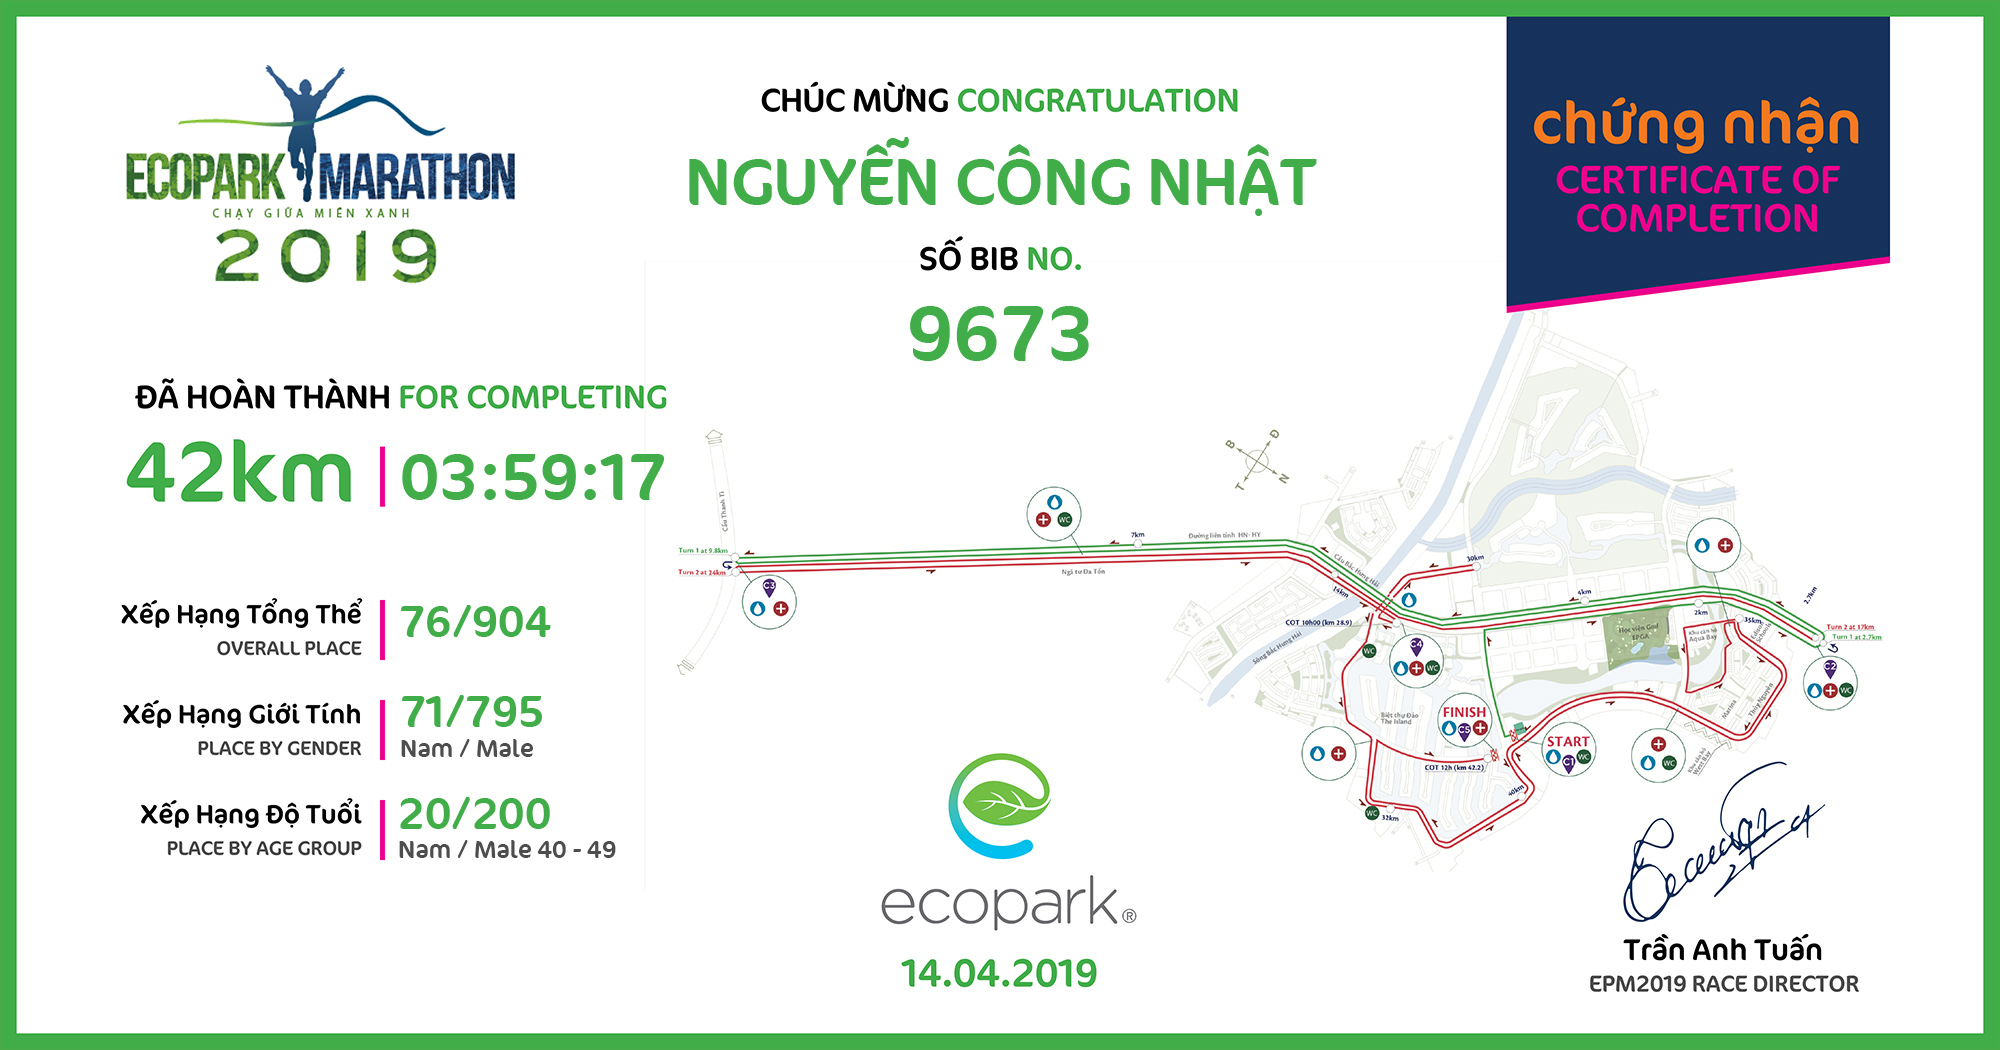 9673 - Nguyễn Công Nhật